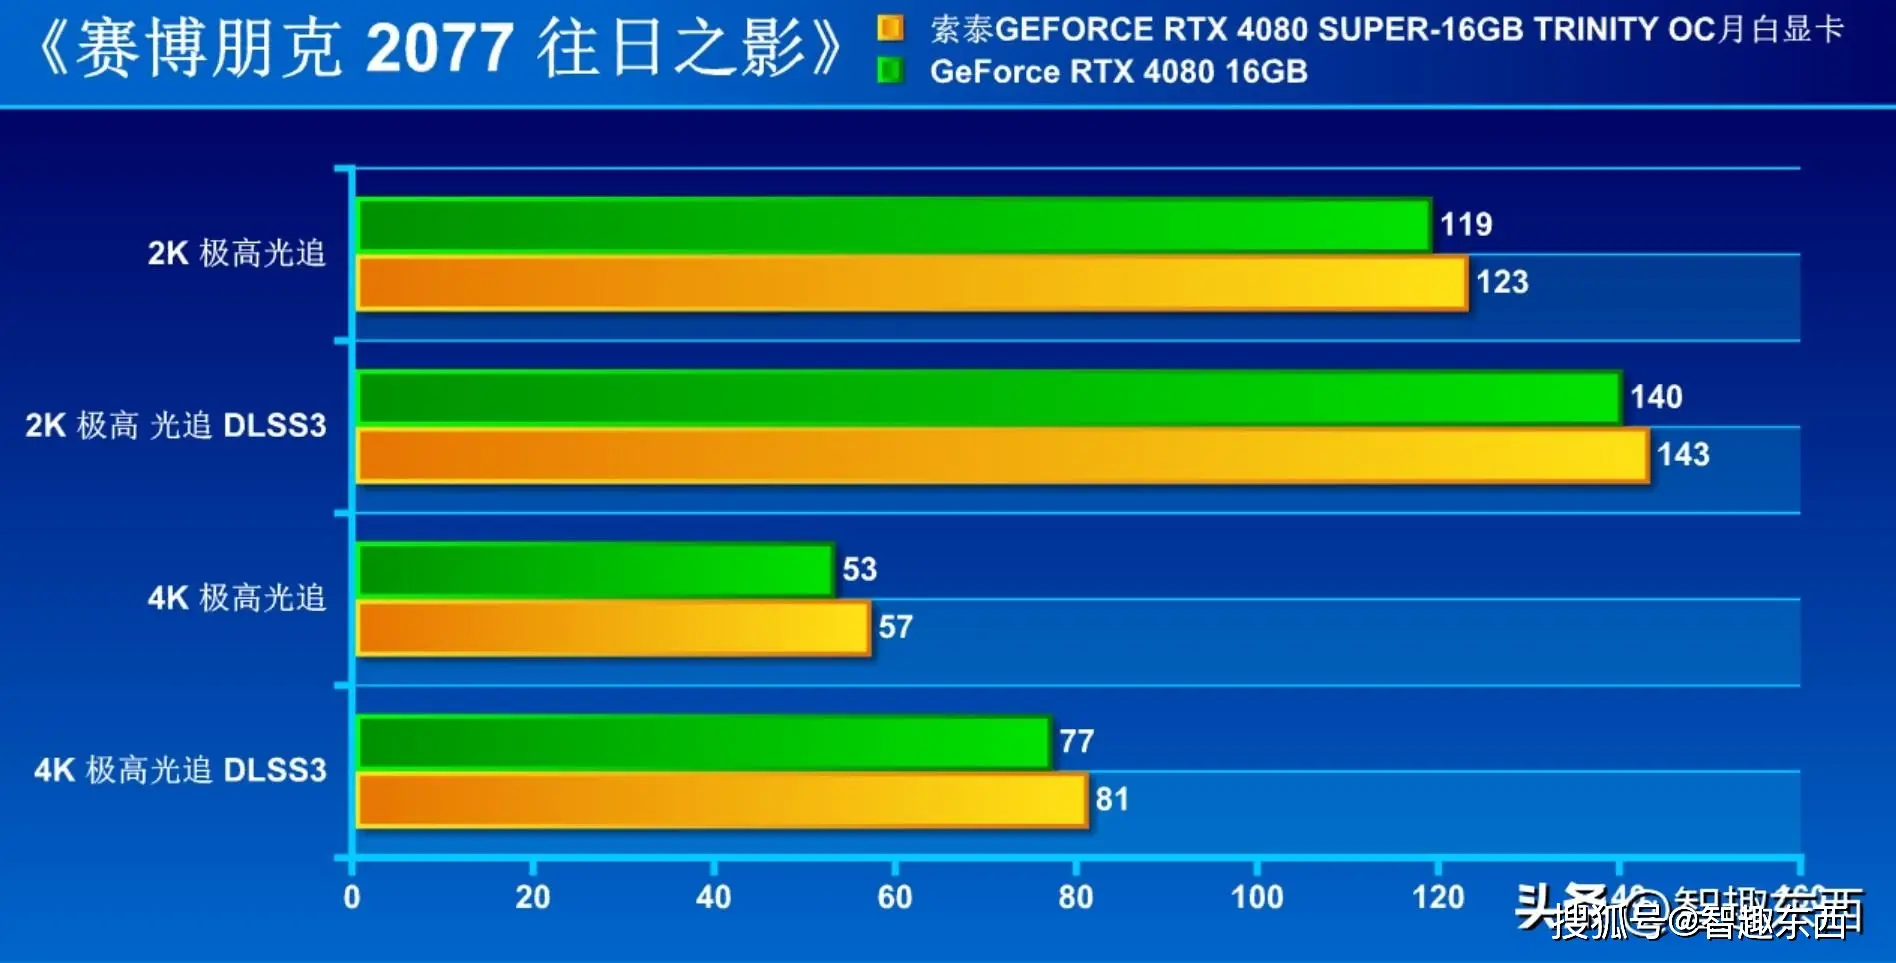 黑金霸主：NVIDIA GeForce GTX 970带你畅玩顶级游戏体验  第2张